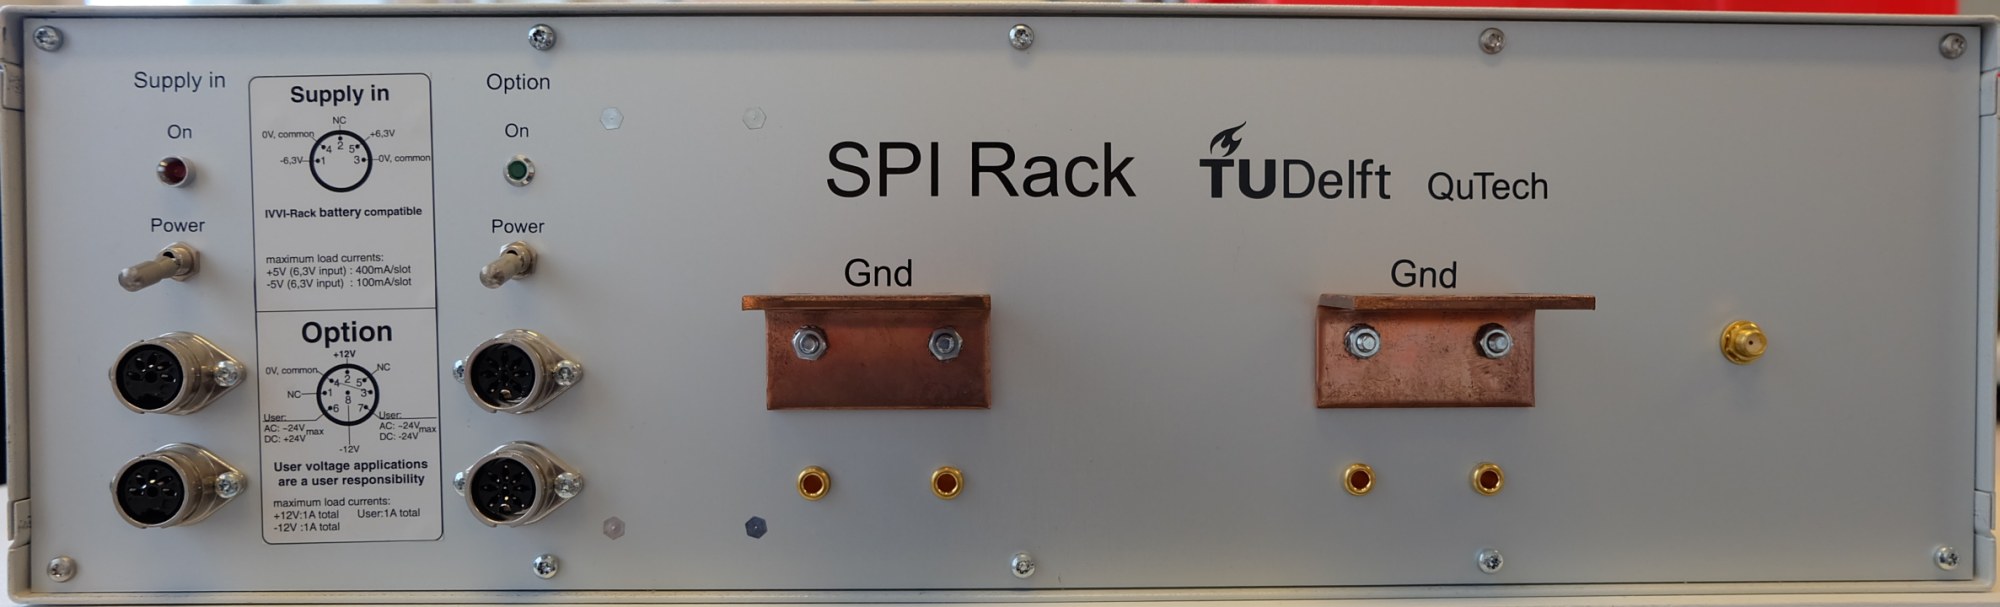 SPI Rack Mainframe Back Picture